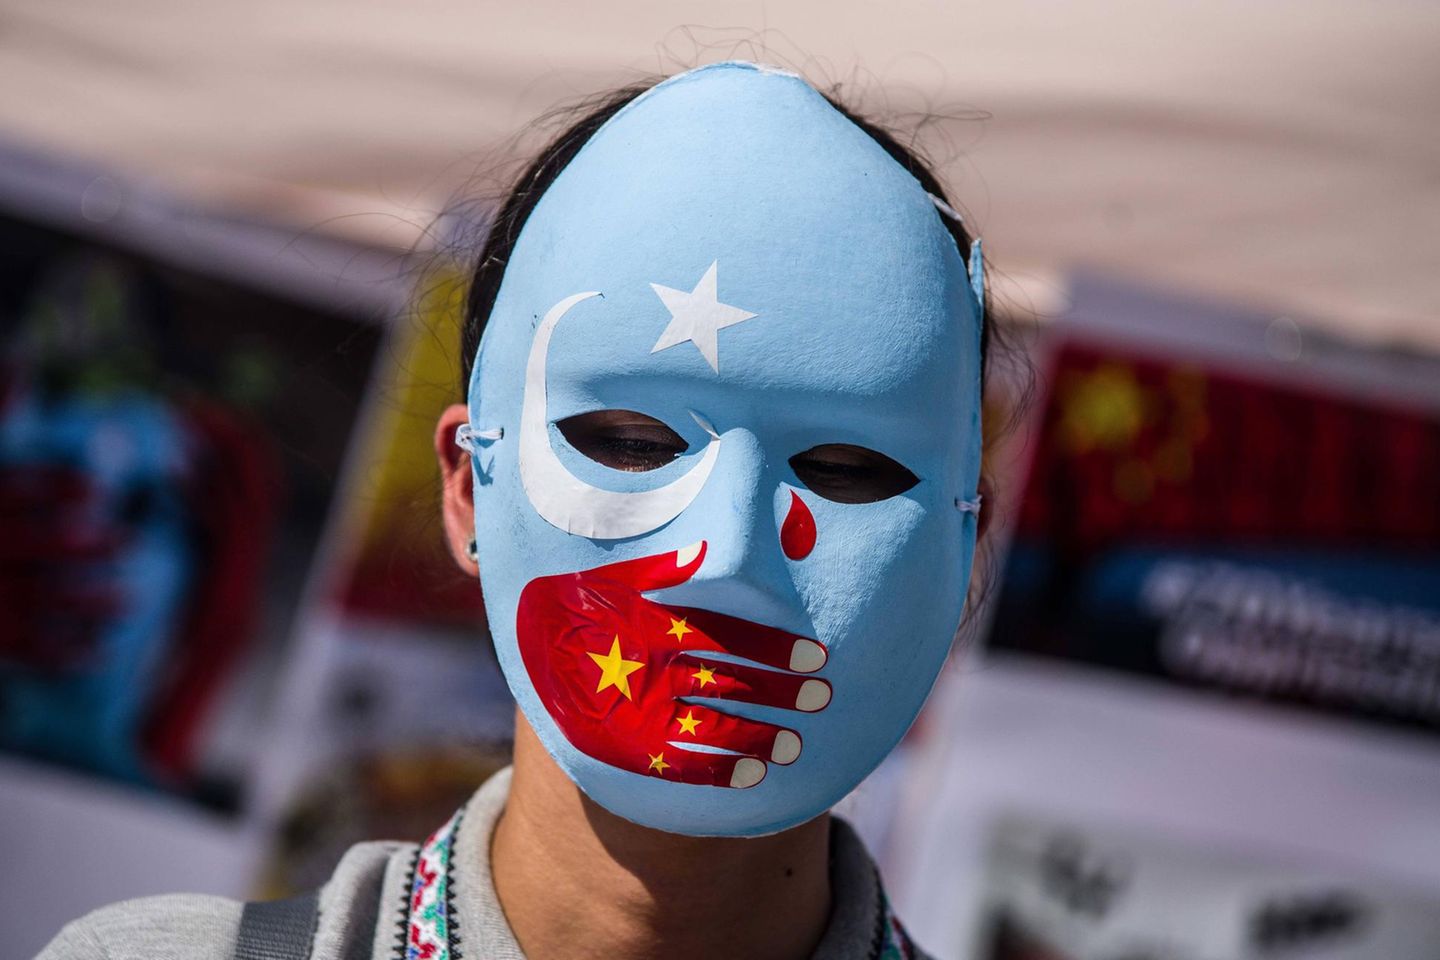 Eine Demonstrantin protestiert in München gegen den Umgang der chinesischen Regierung mit der uigurischen Minderheit, die mutmaßlich Zwangsarbeit verrichten müssen